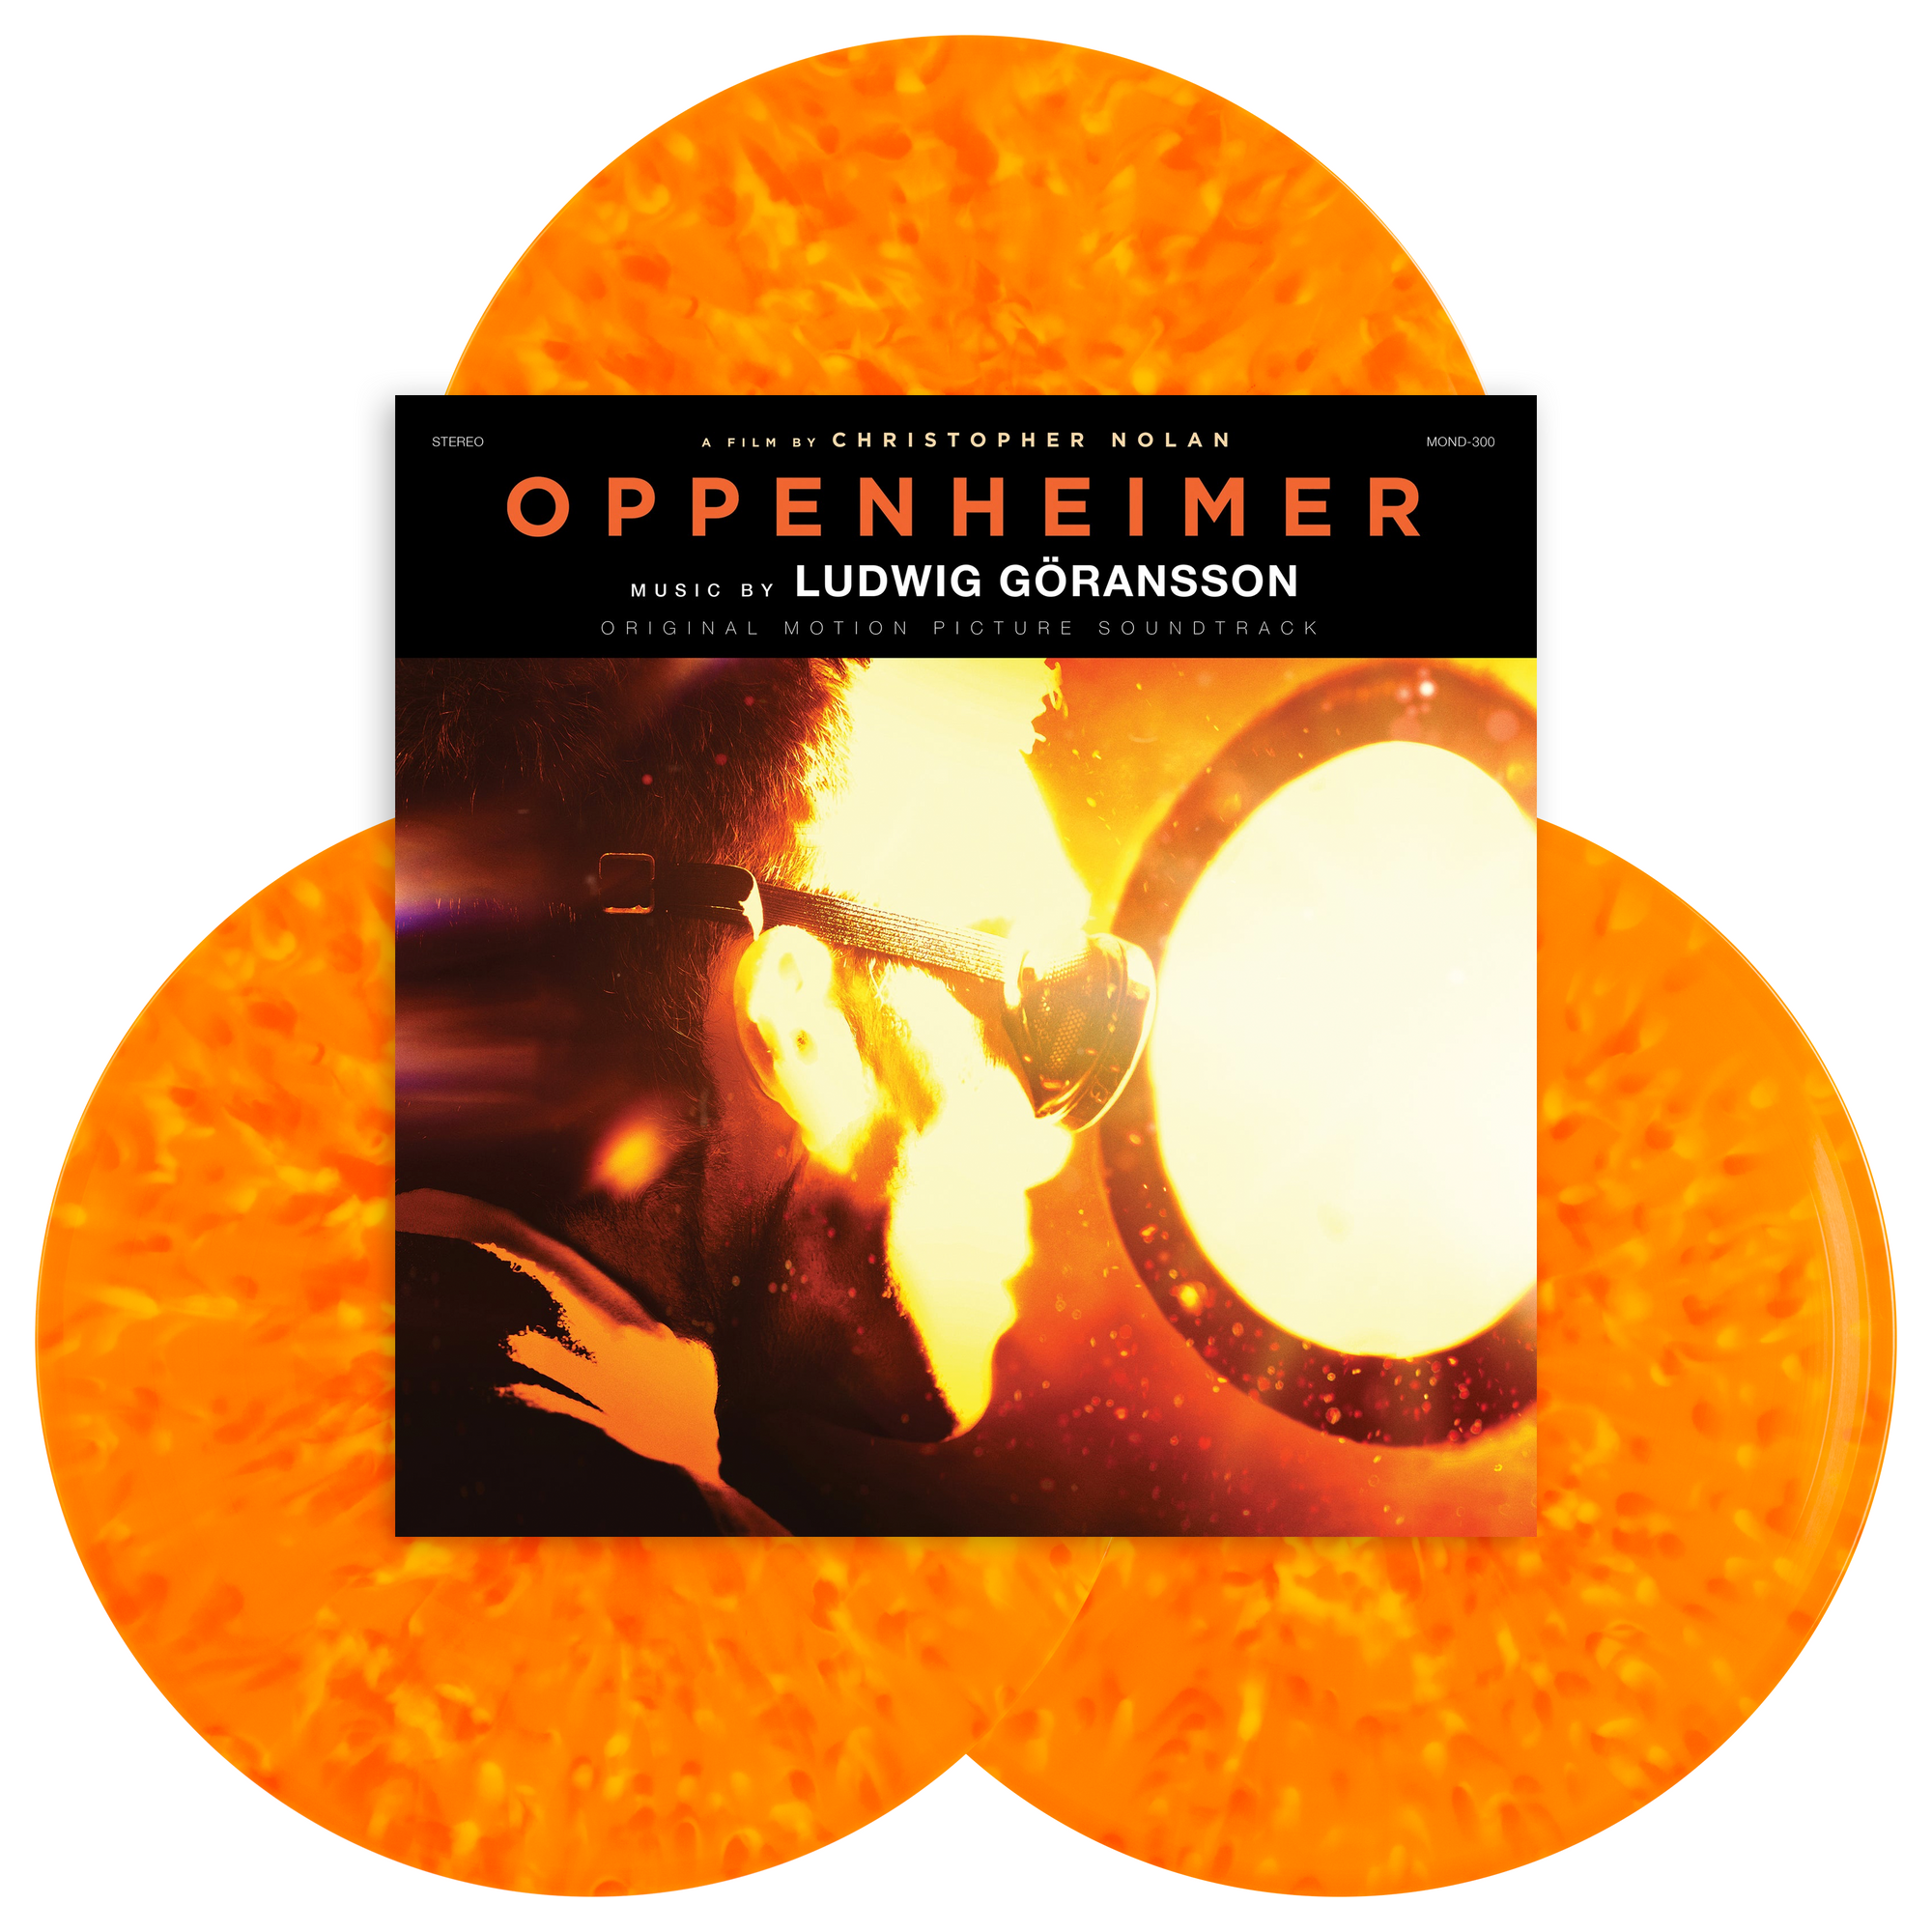 Oppenheimer - Vinyl Soundtrack